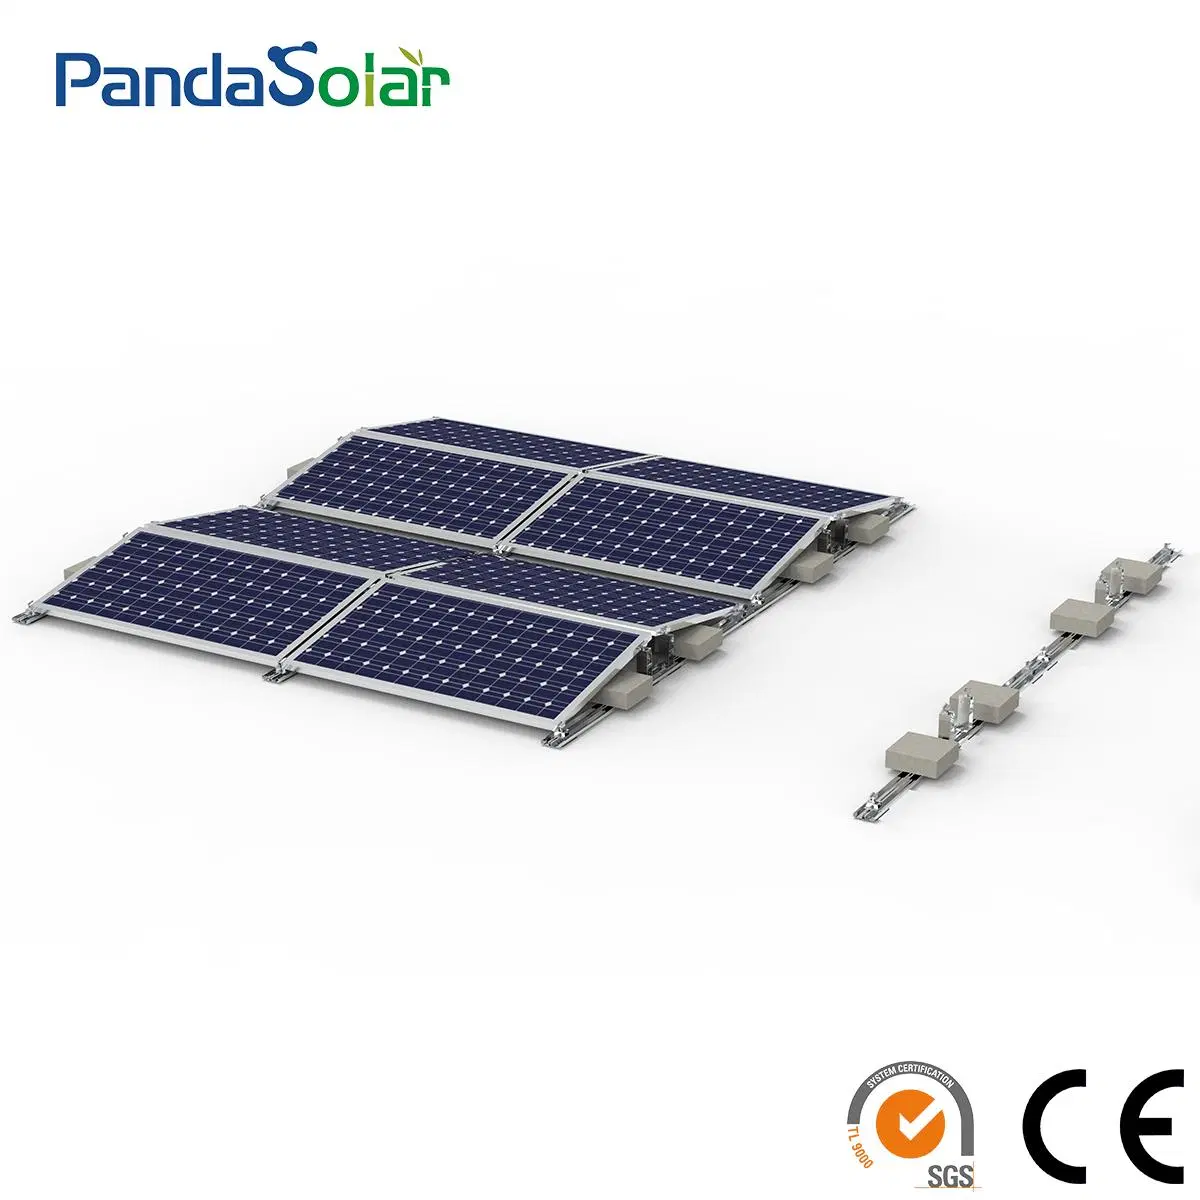 Pandasolar Support de toit plat en alliage d'aluminium avec contrepoids pour montage solaire.